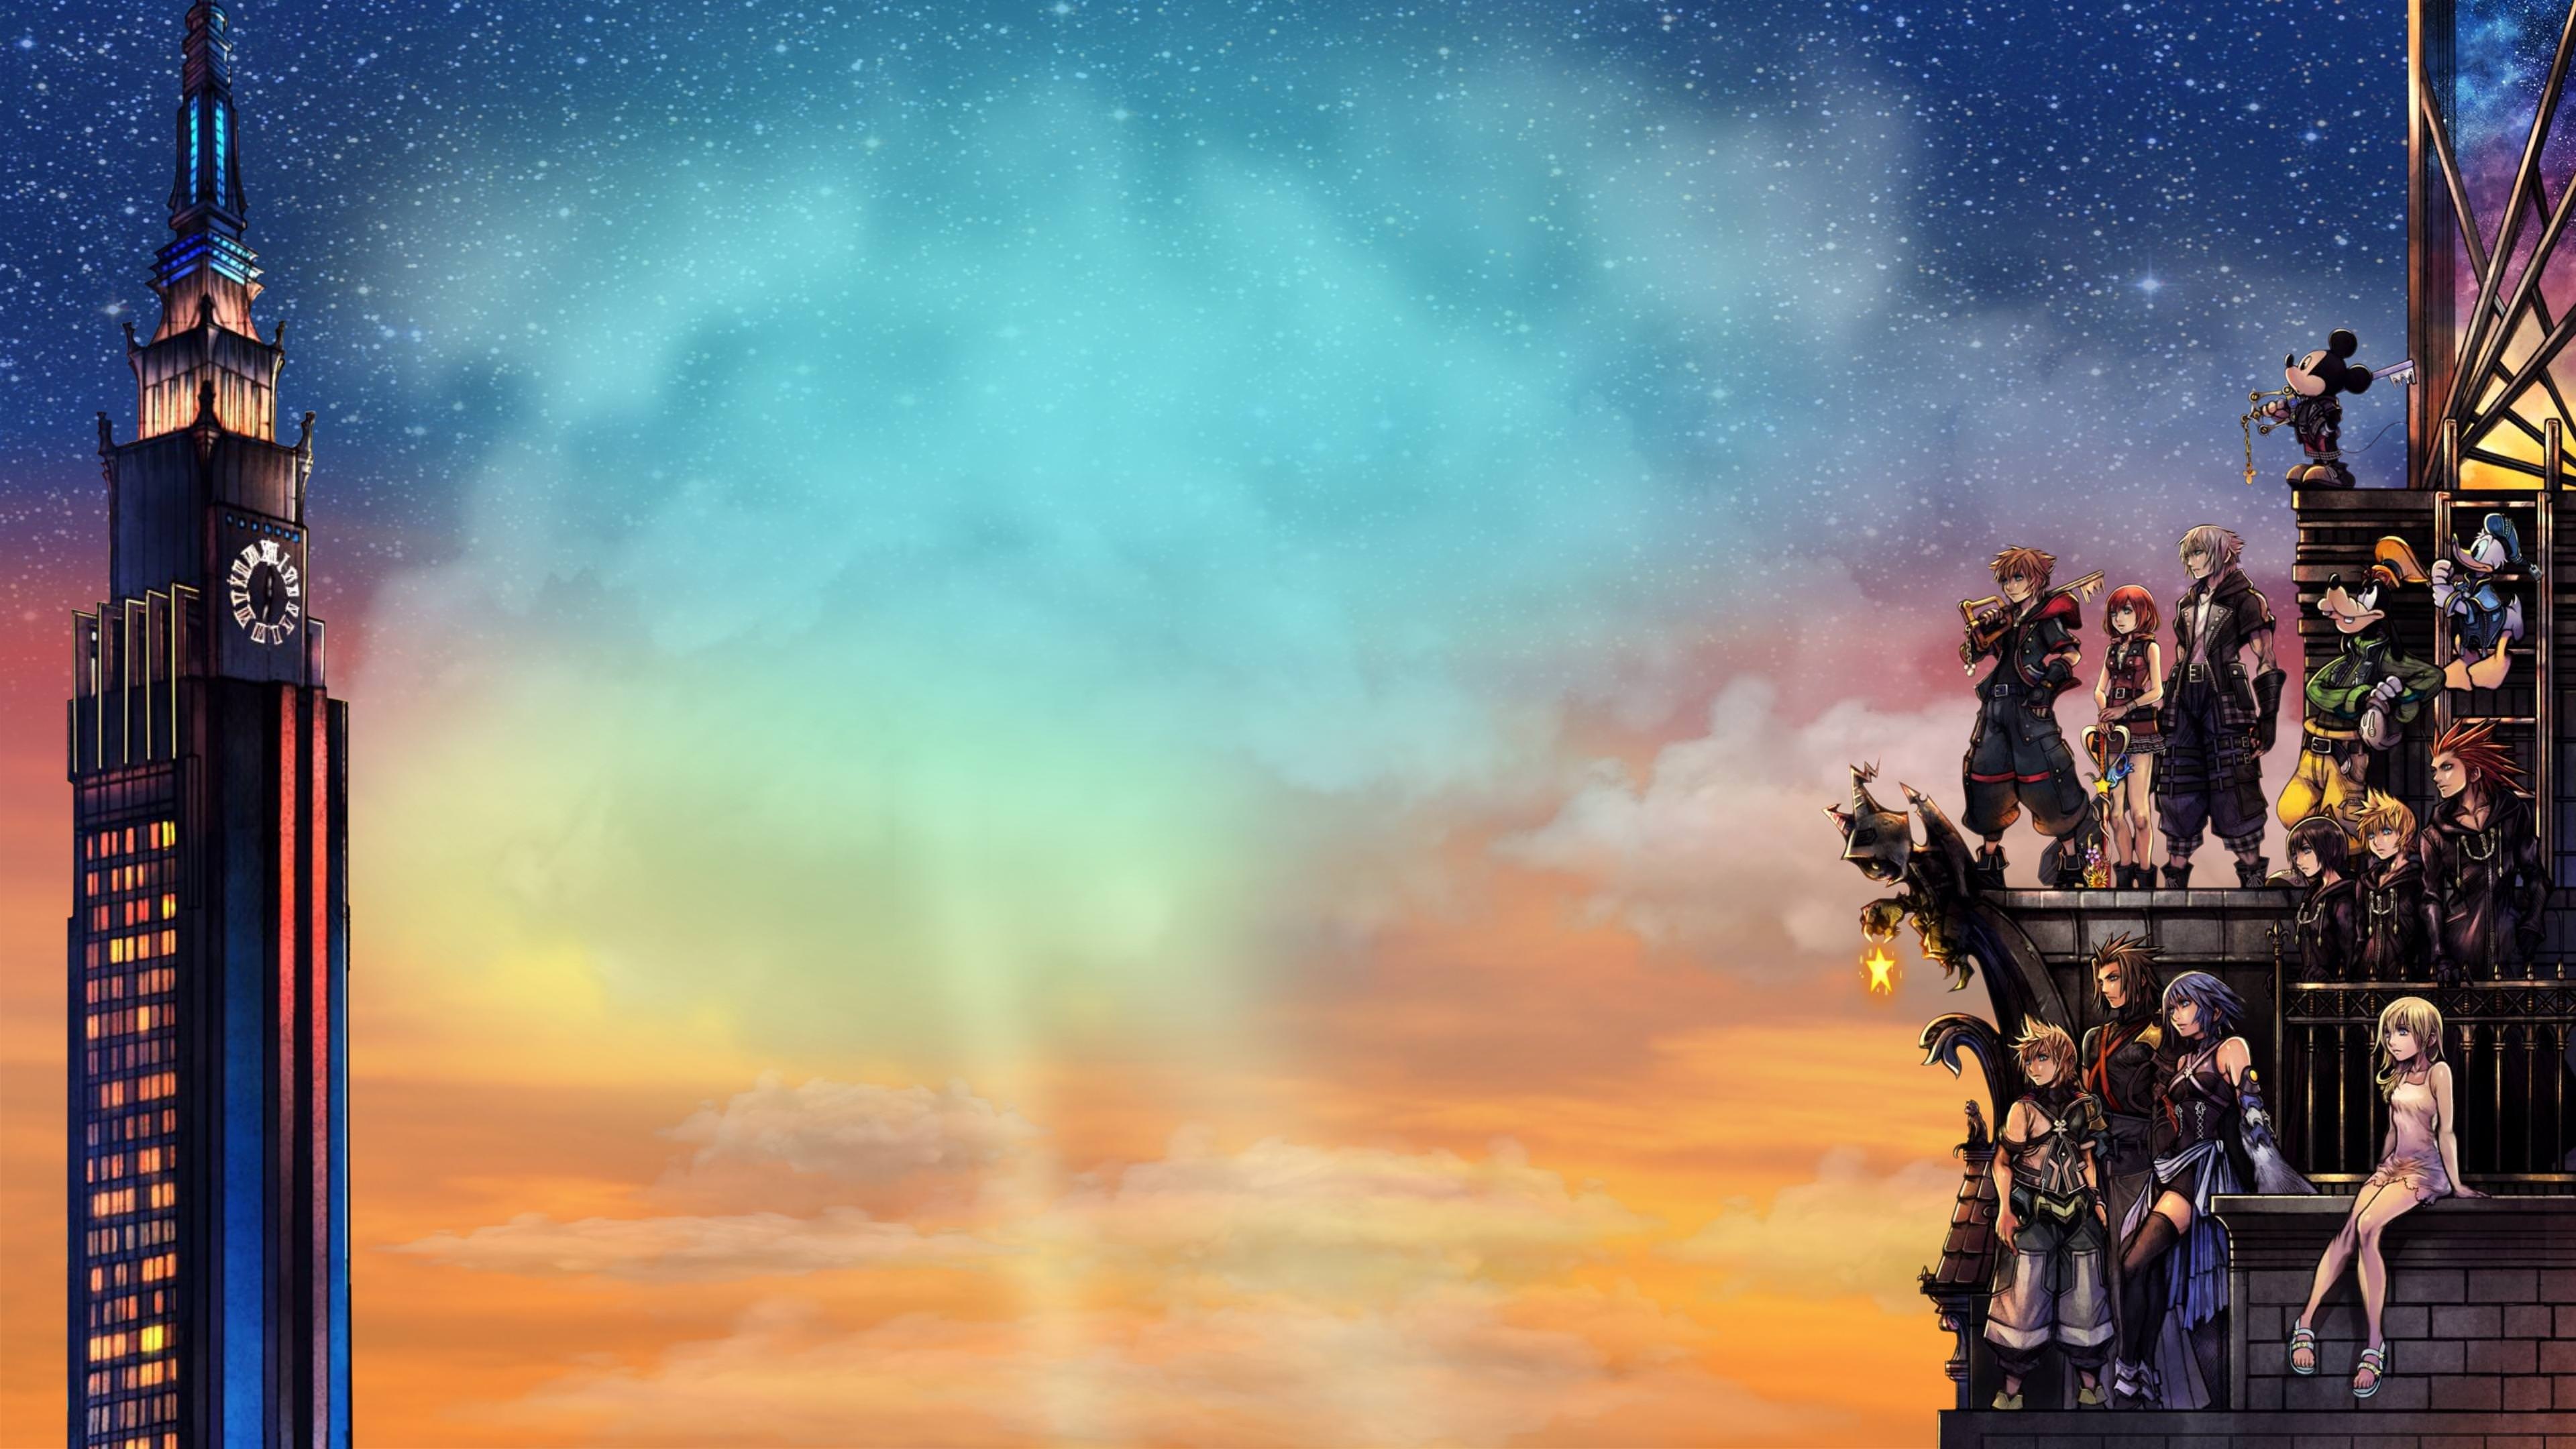 Aqua, Kingdom Hearts, Gaming, 4K Ultra HD cover art, 3840x2160 4K Desktop